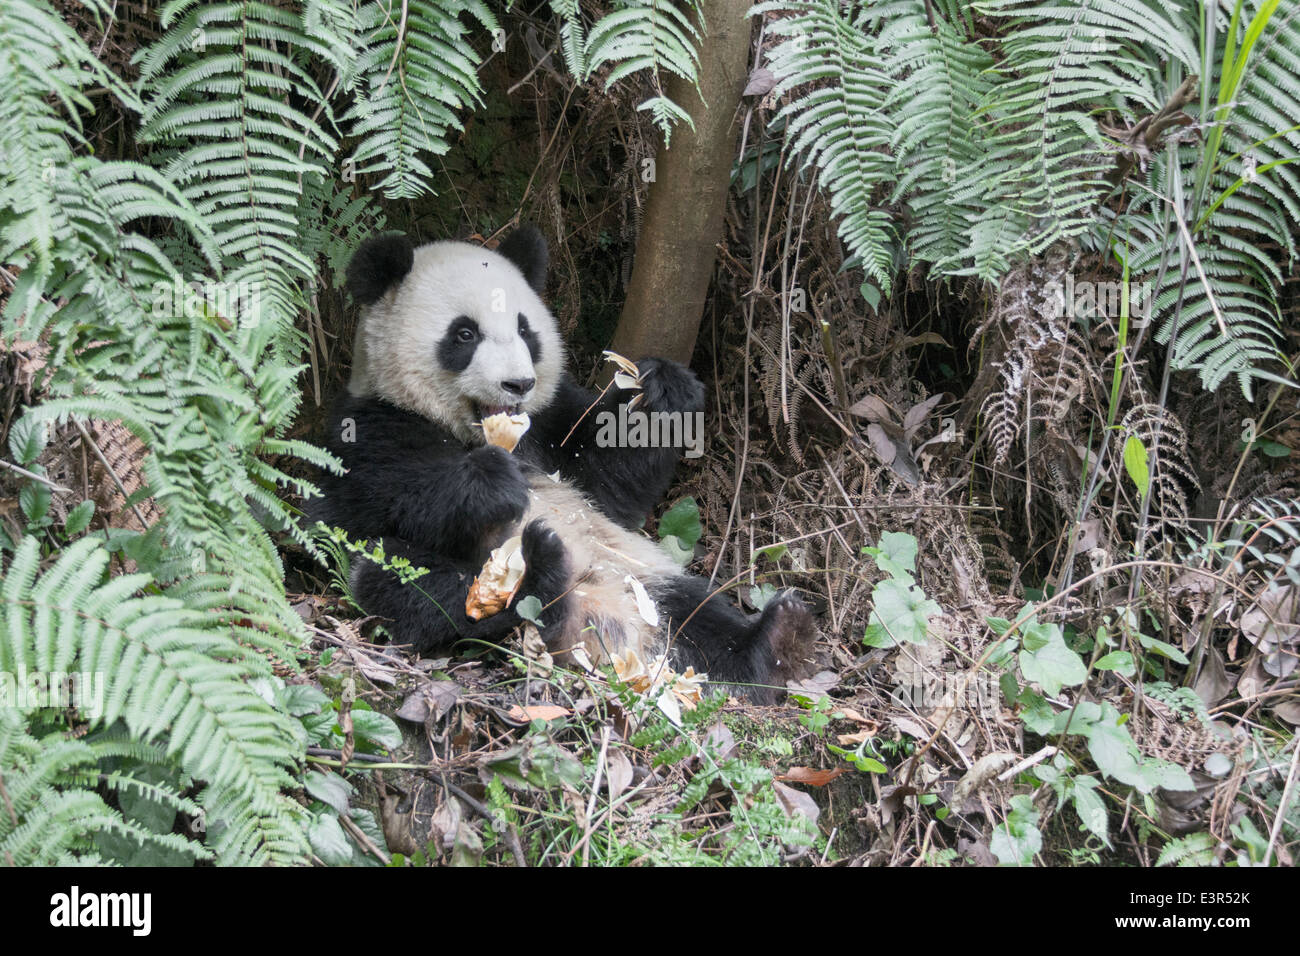 Jeune panda et fougères, Bifeng Xia, province du Sichuan, Chine Banque D'Images